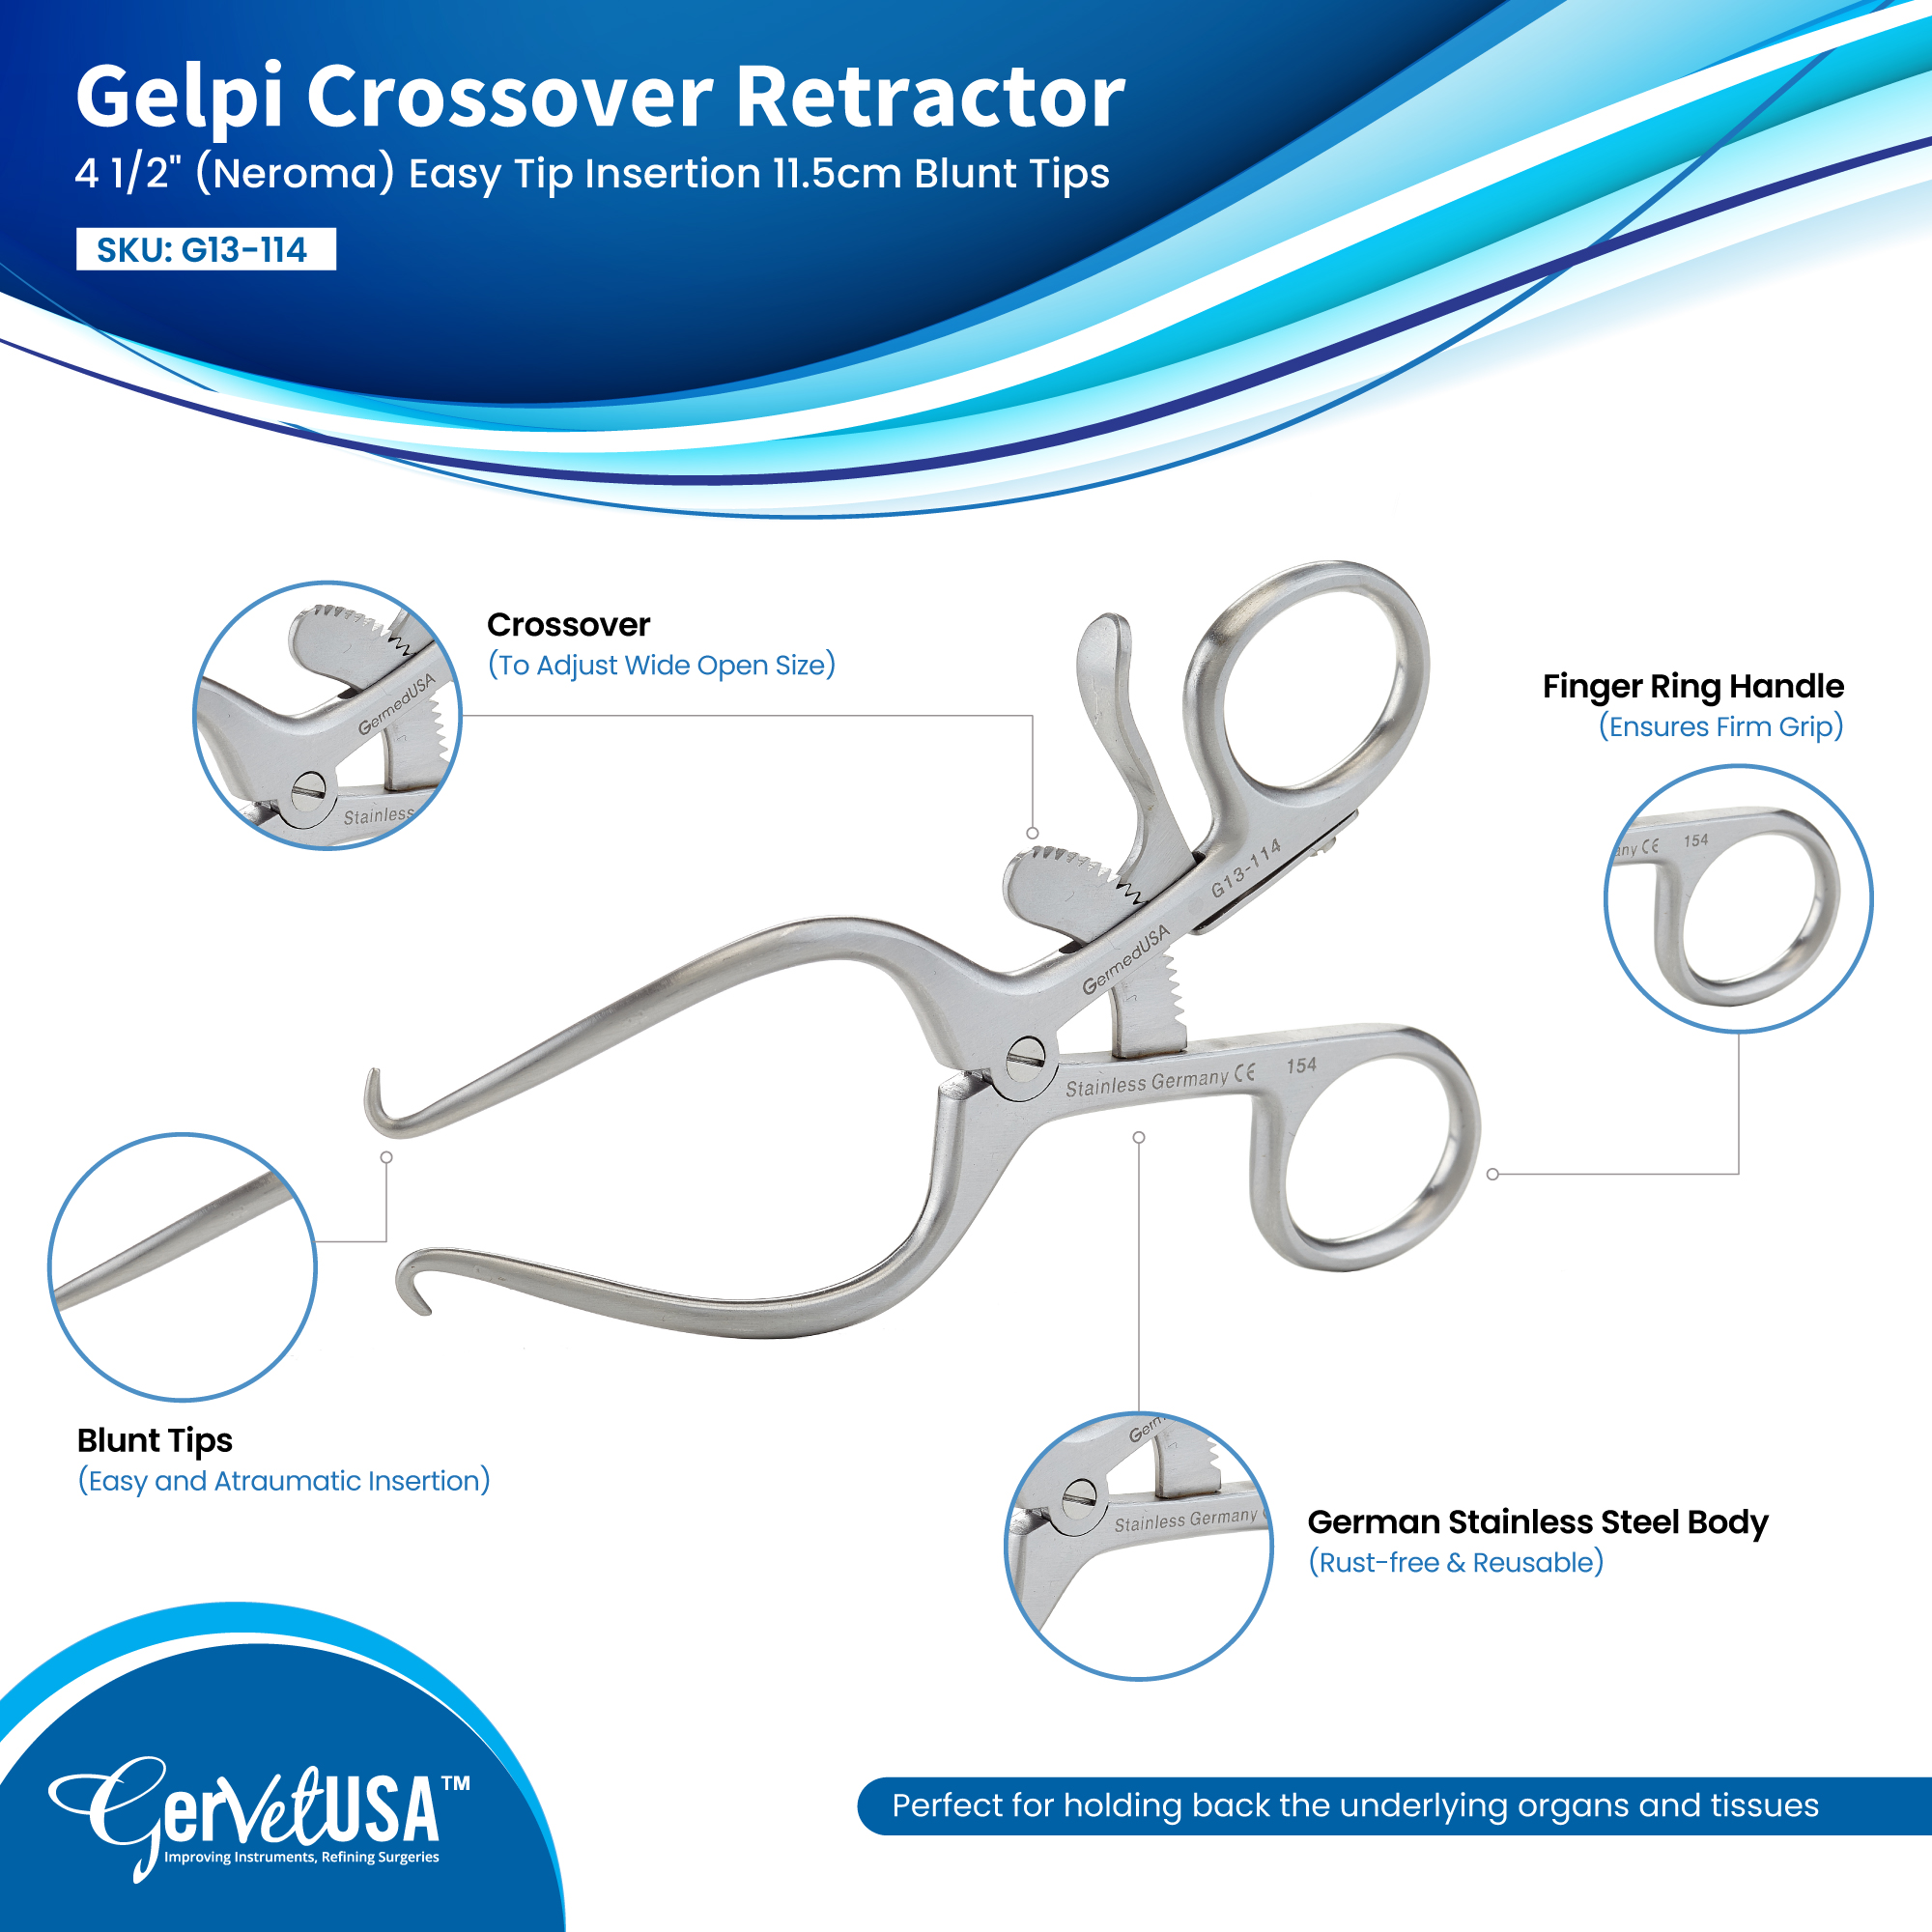 Gelpi Crossover Retractor (Neroma) Deep Angle 4 1/2" 11.5cm Blunt Tips